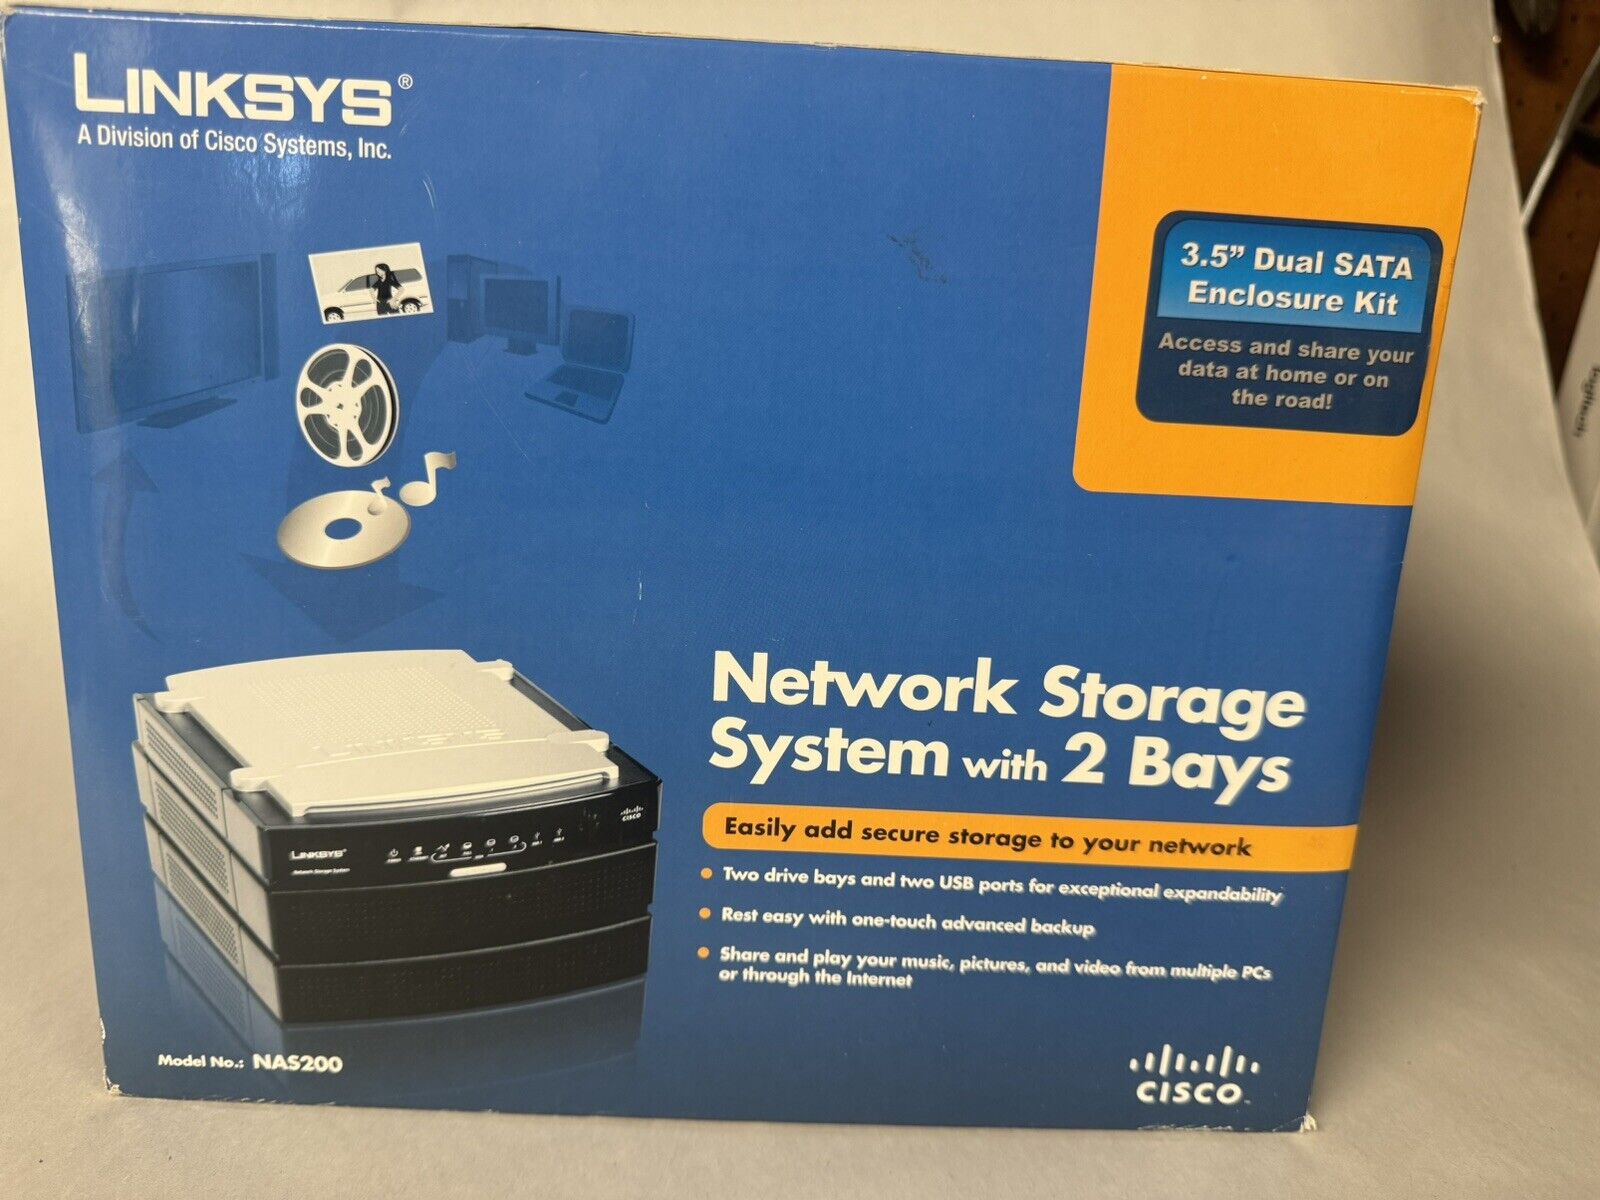 Cisco-Linksys Network Storage System with 2 Bays (NAS200)